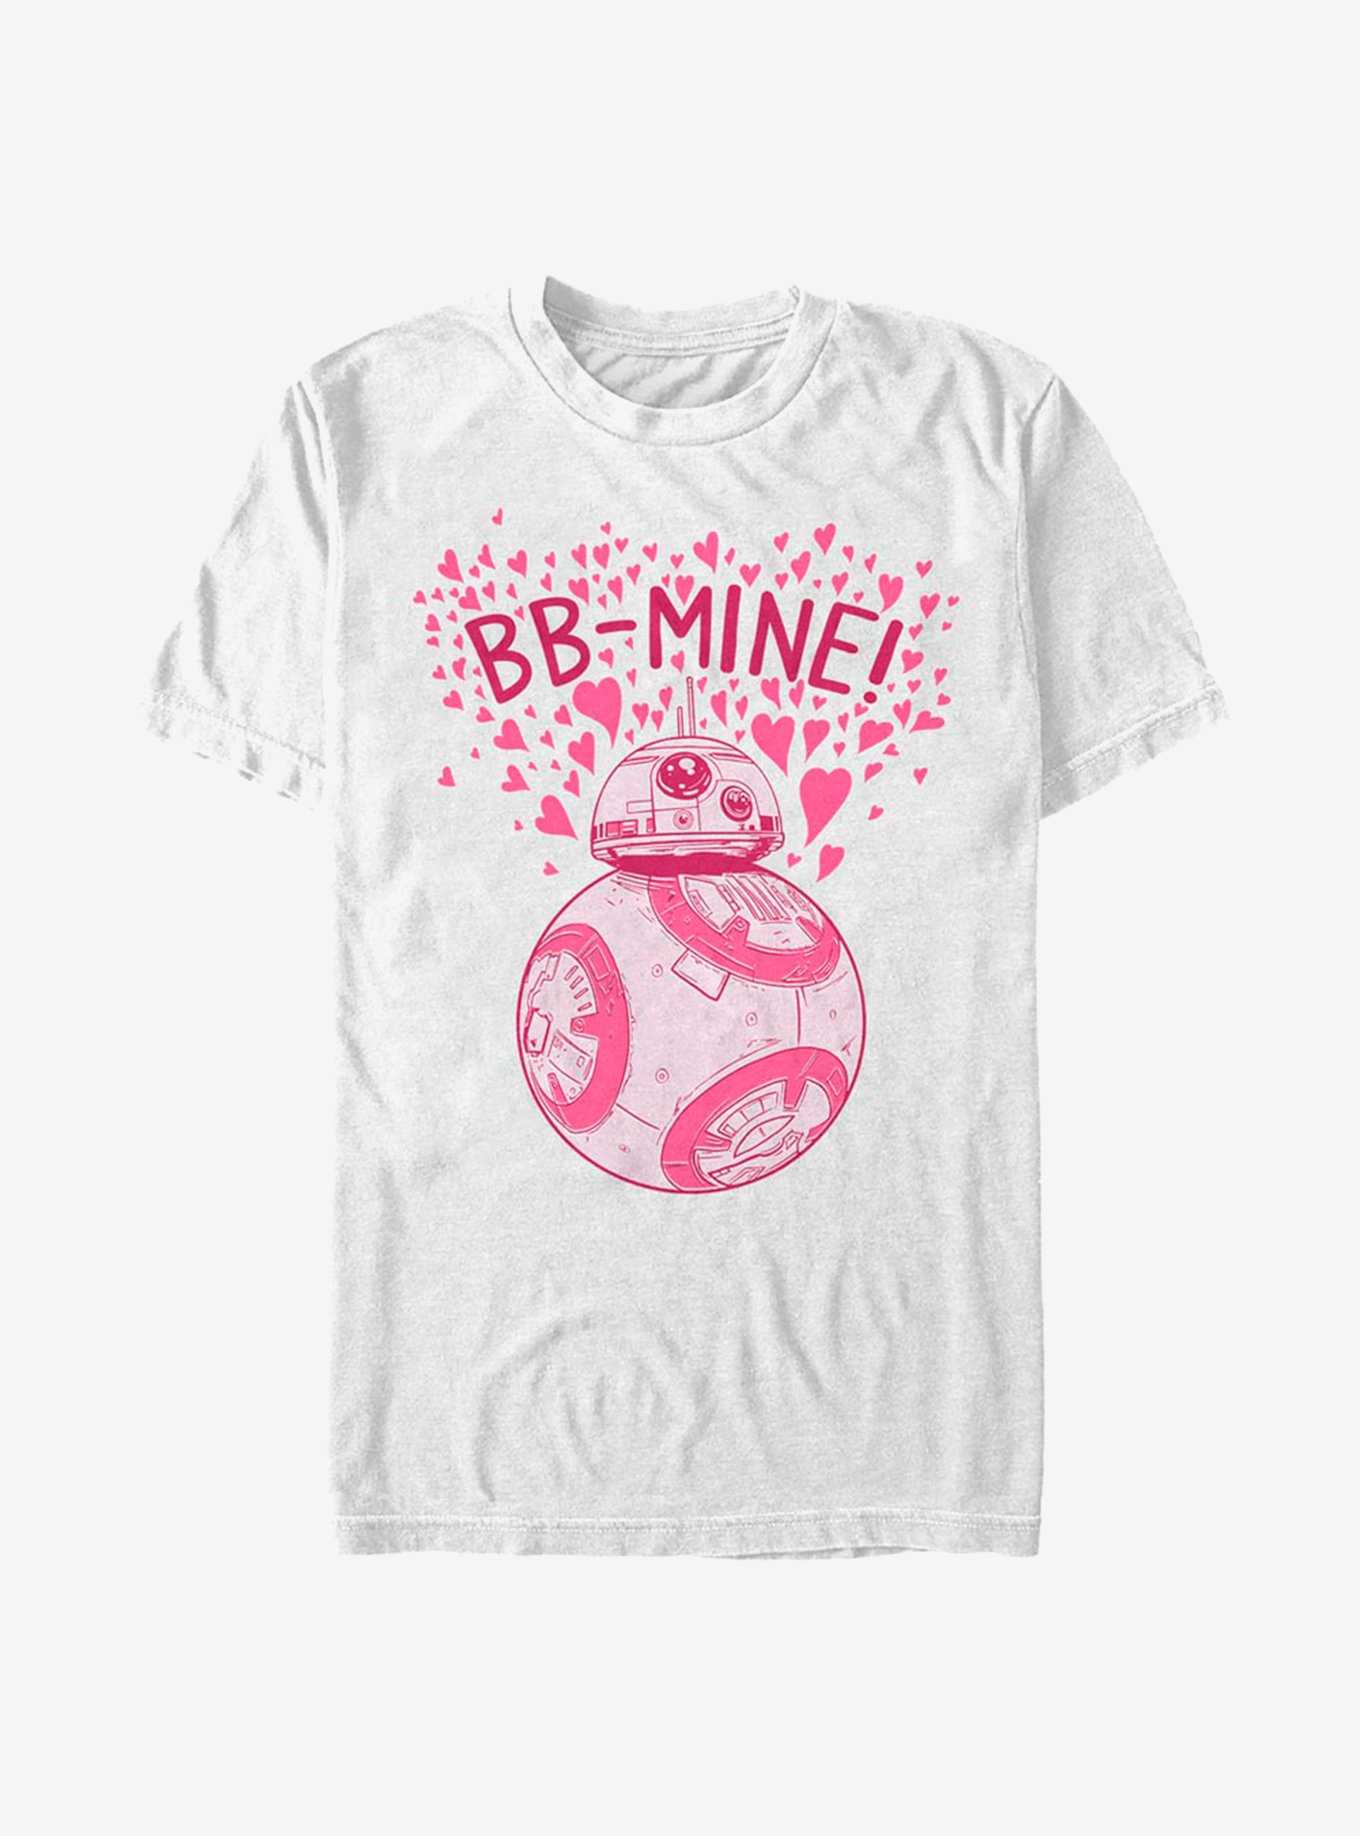 Star Wars: The Last Jedi BB-Mine! T-Shirt, , hi-res